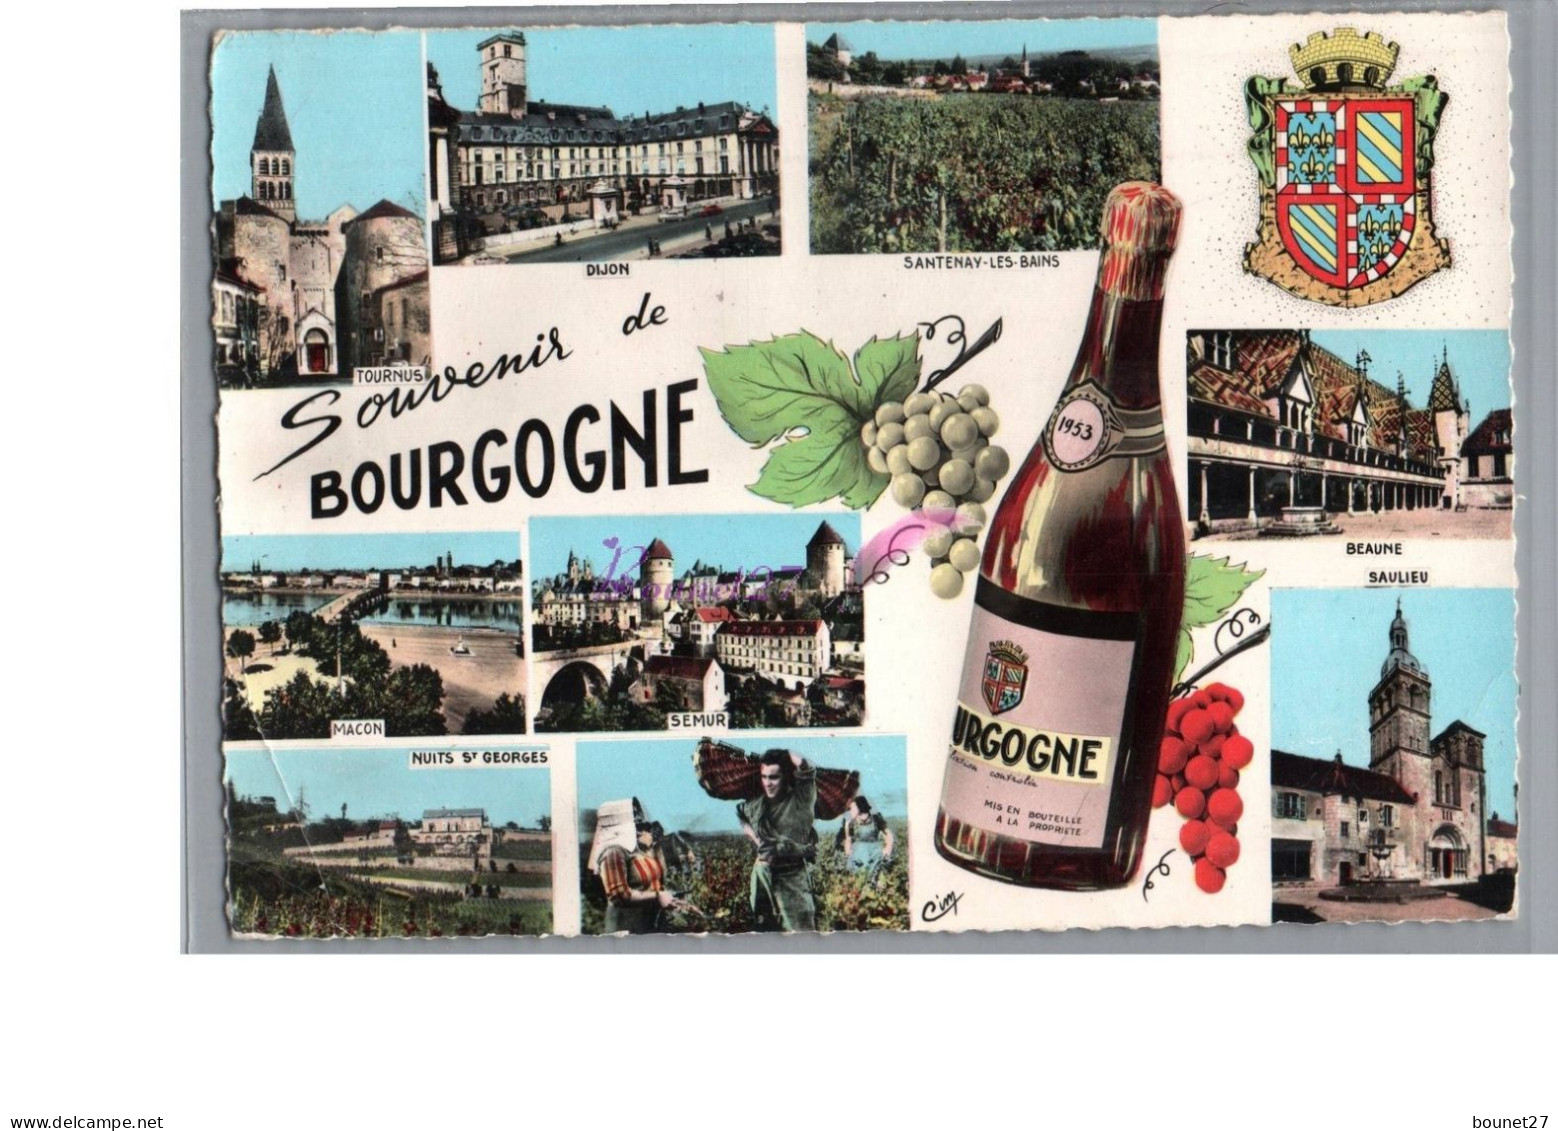 BOURGOGNE - Souvenir Bouteille De Vin Vigne Raison Dijon Macon Nuits St Georges Beaume Saulieu 1964 - Bourgogne